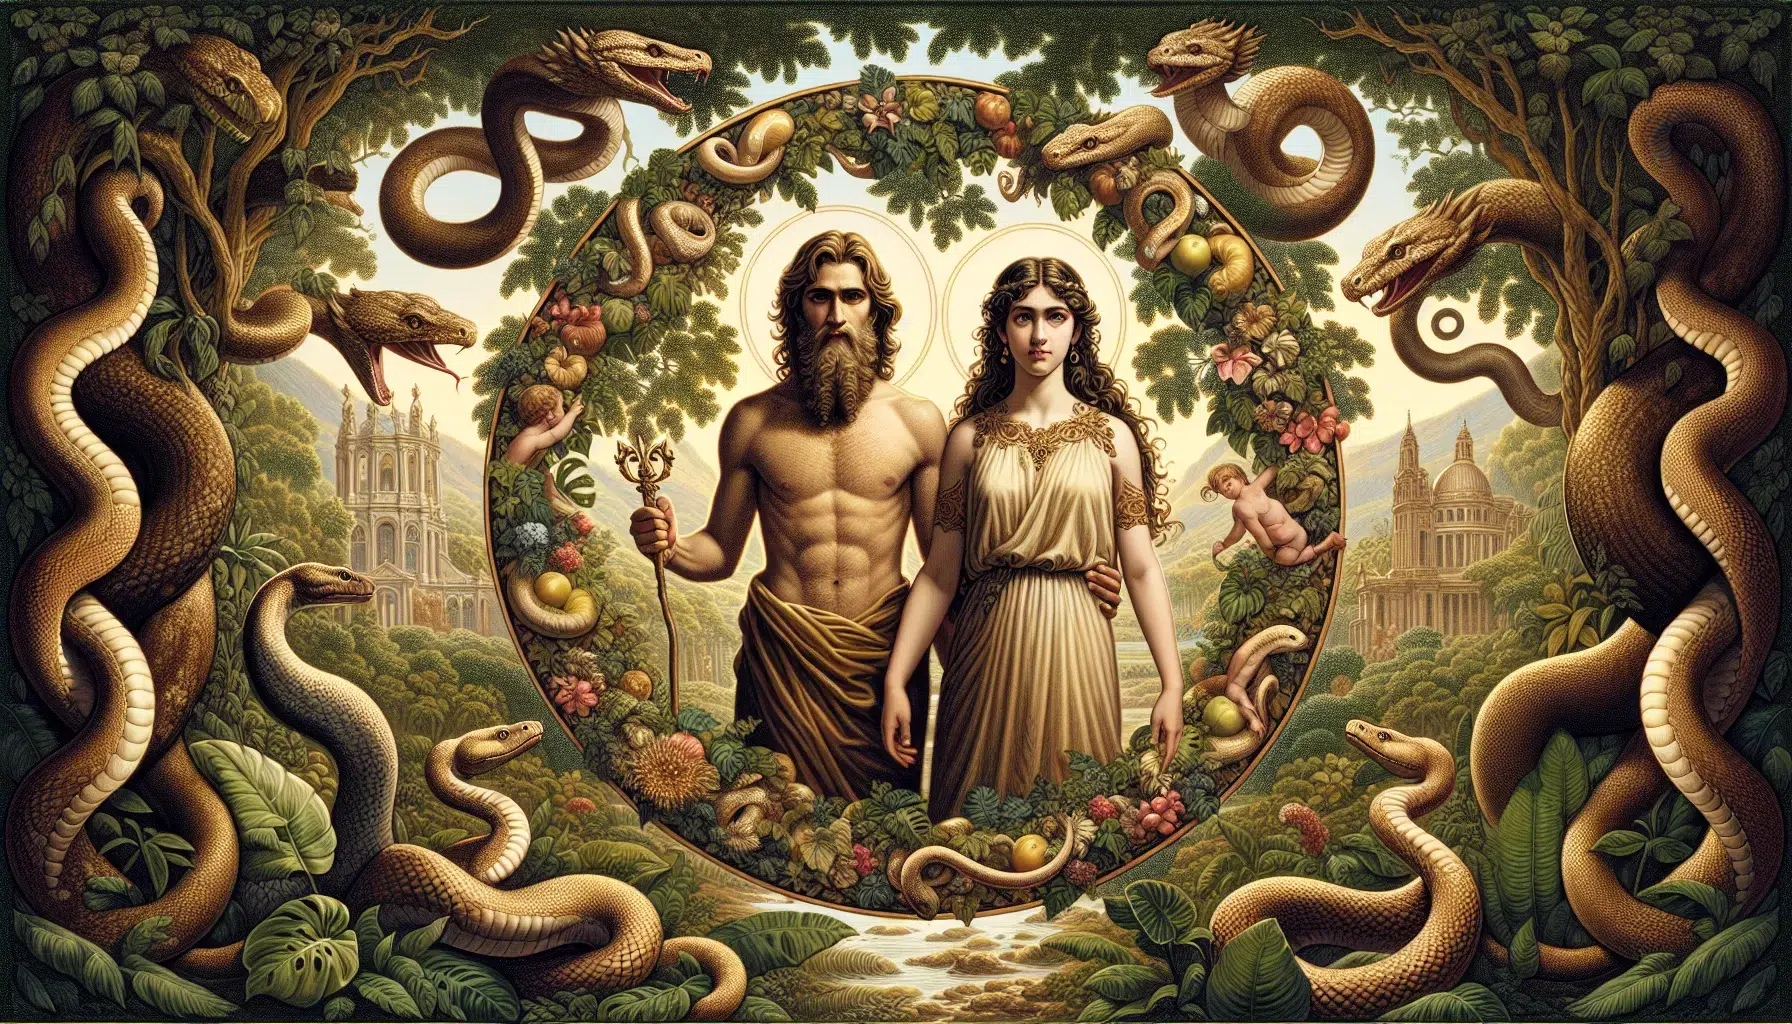 Representación artística de Adán y Eva en el paraíso terrenal, rodeados de naturaleza exuberante y serpientes en círculo